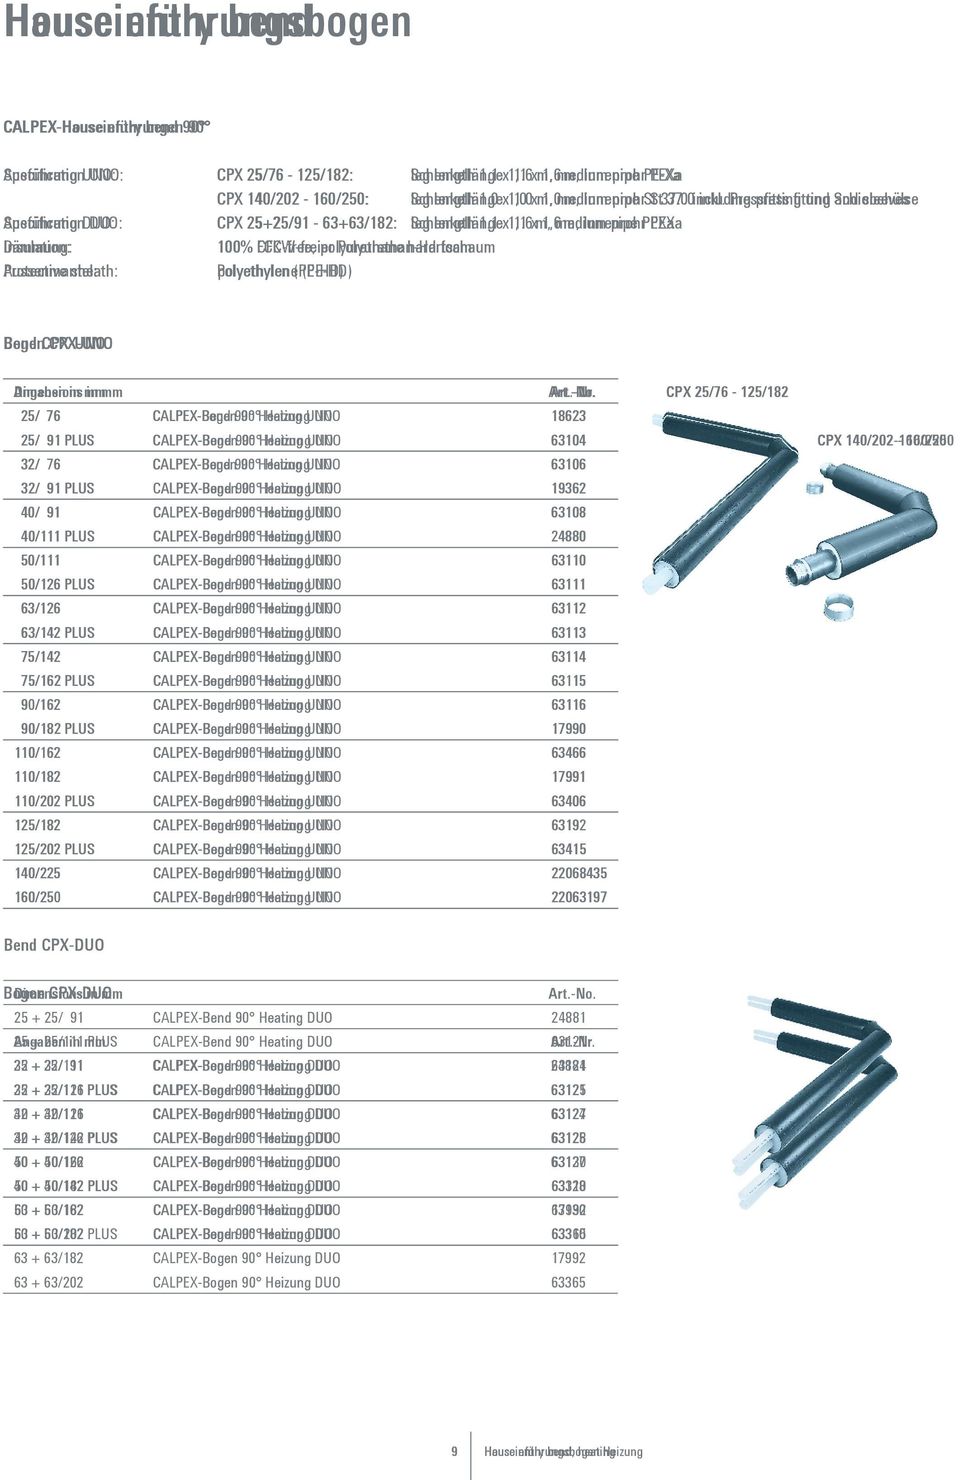 Pressfitting press fitting und Schiebehülse and sleeves Ausführung Specification DUO: CPX 25+25/91-63+63/182: Schenkellänge leg length 1.1 x 1,1 1.